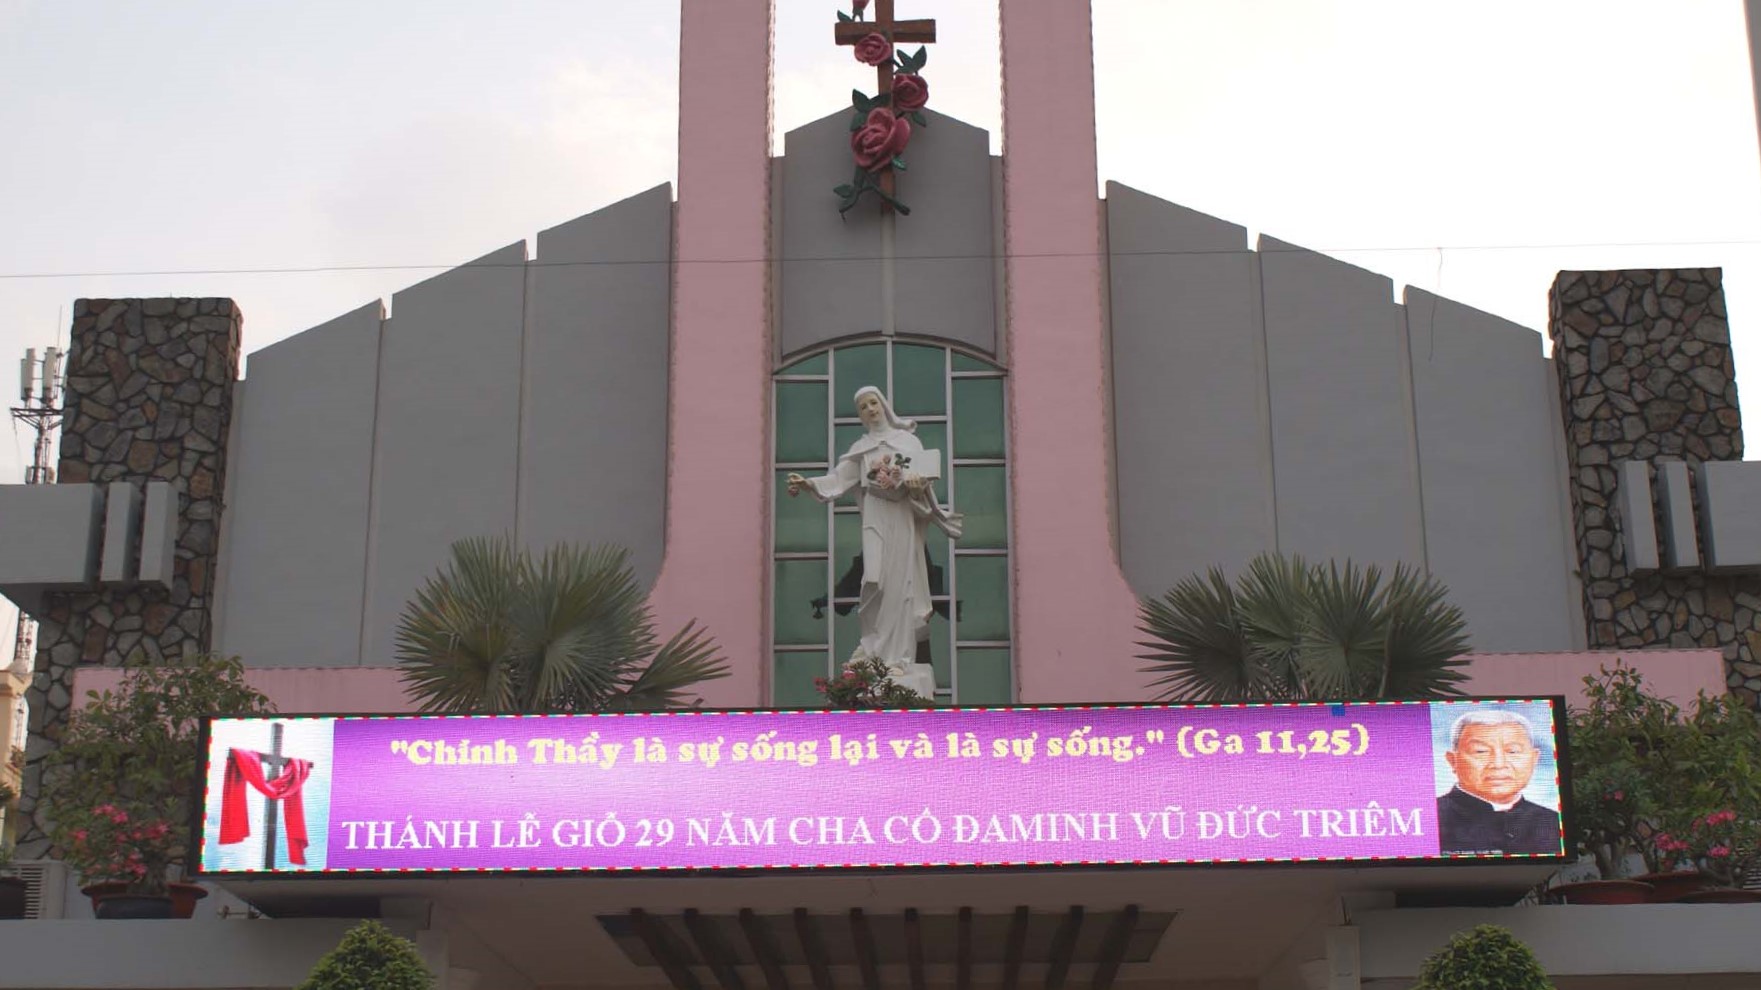 Giáo xứ Tân Việt: Lễ giỗ 29 năm Cha cố Đaminh Vũ Đức Triêm